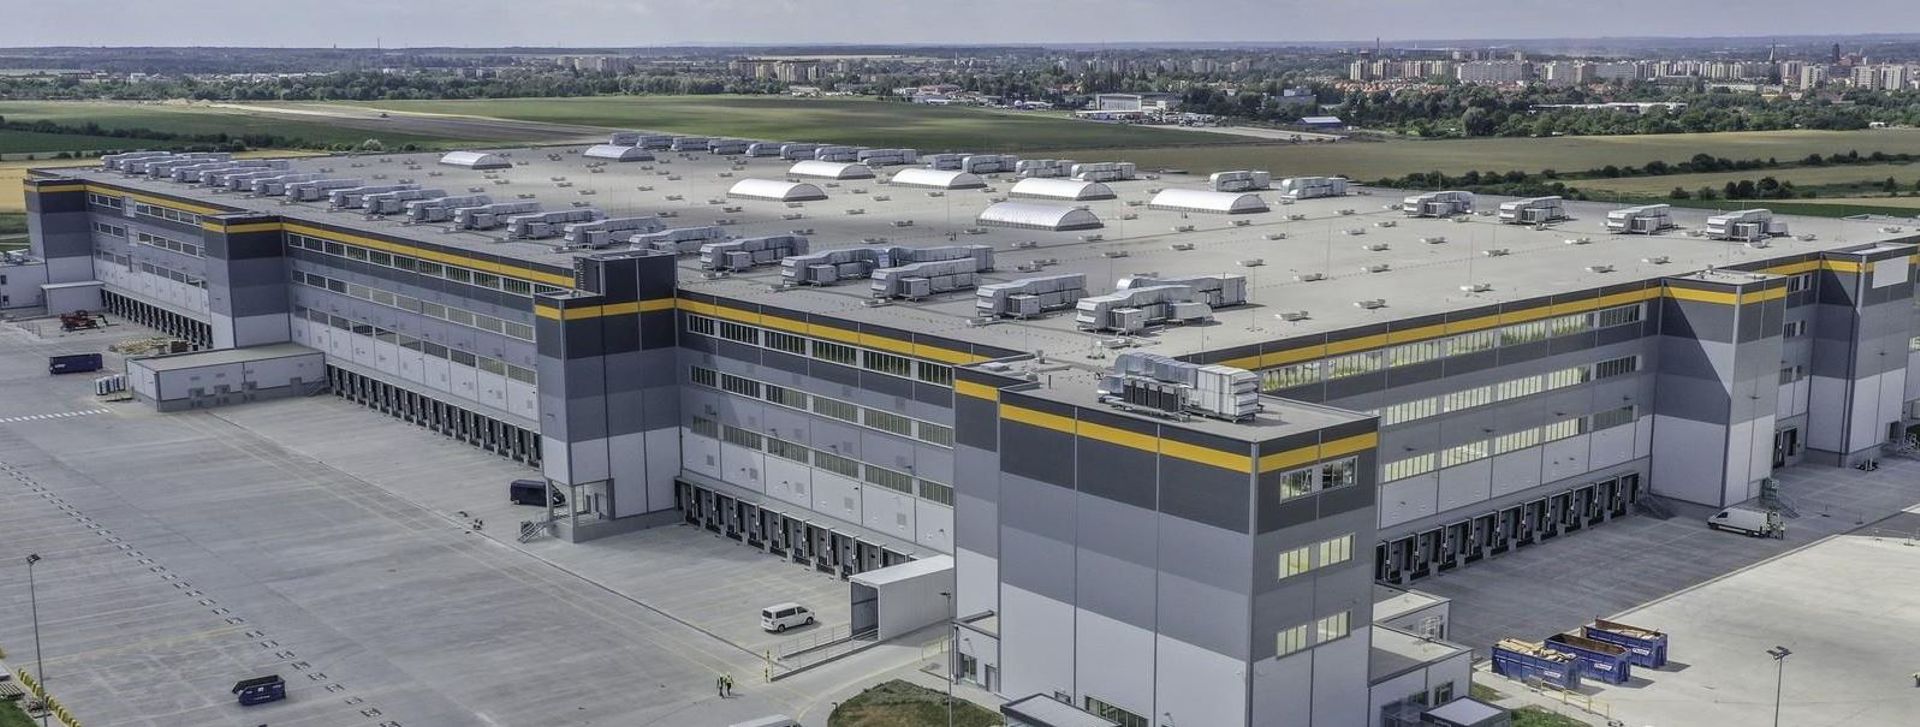 Amazon zatrudnił ostatecznie w Gliwicach nie tysiąc, a aż 2000 pracowników